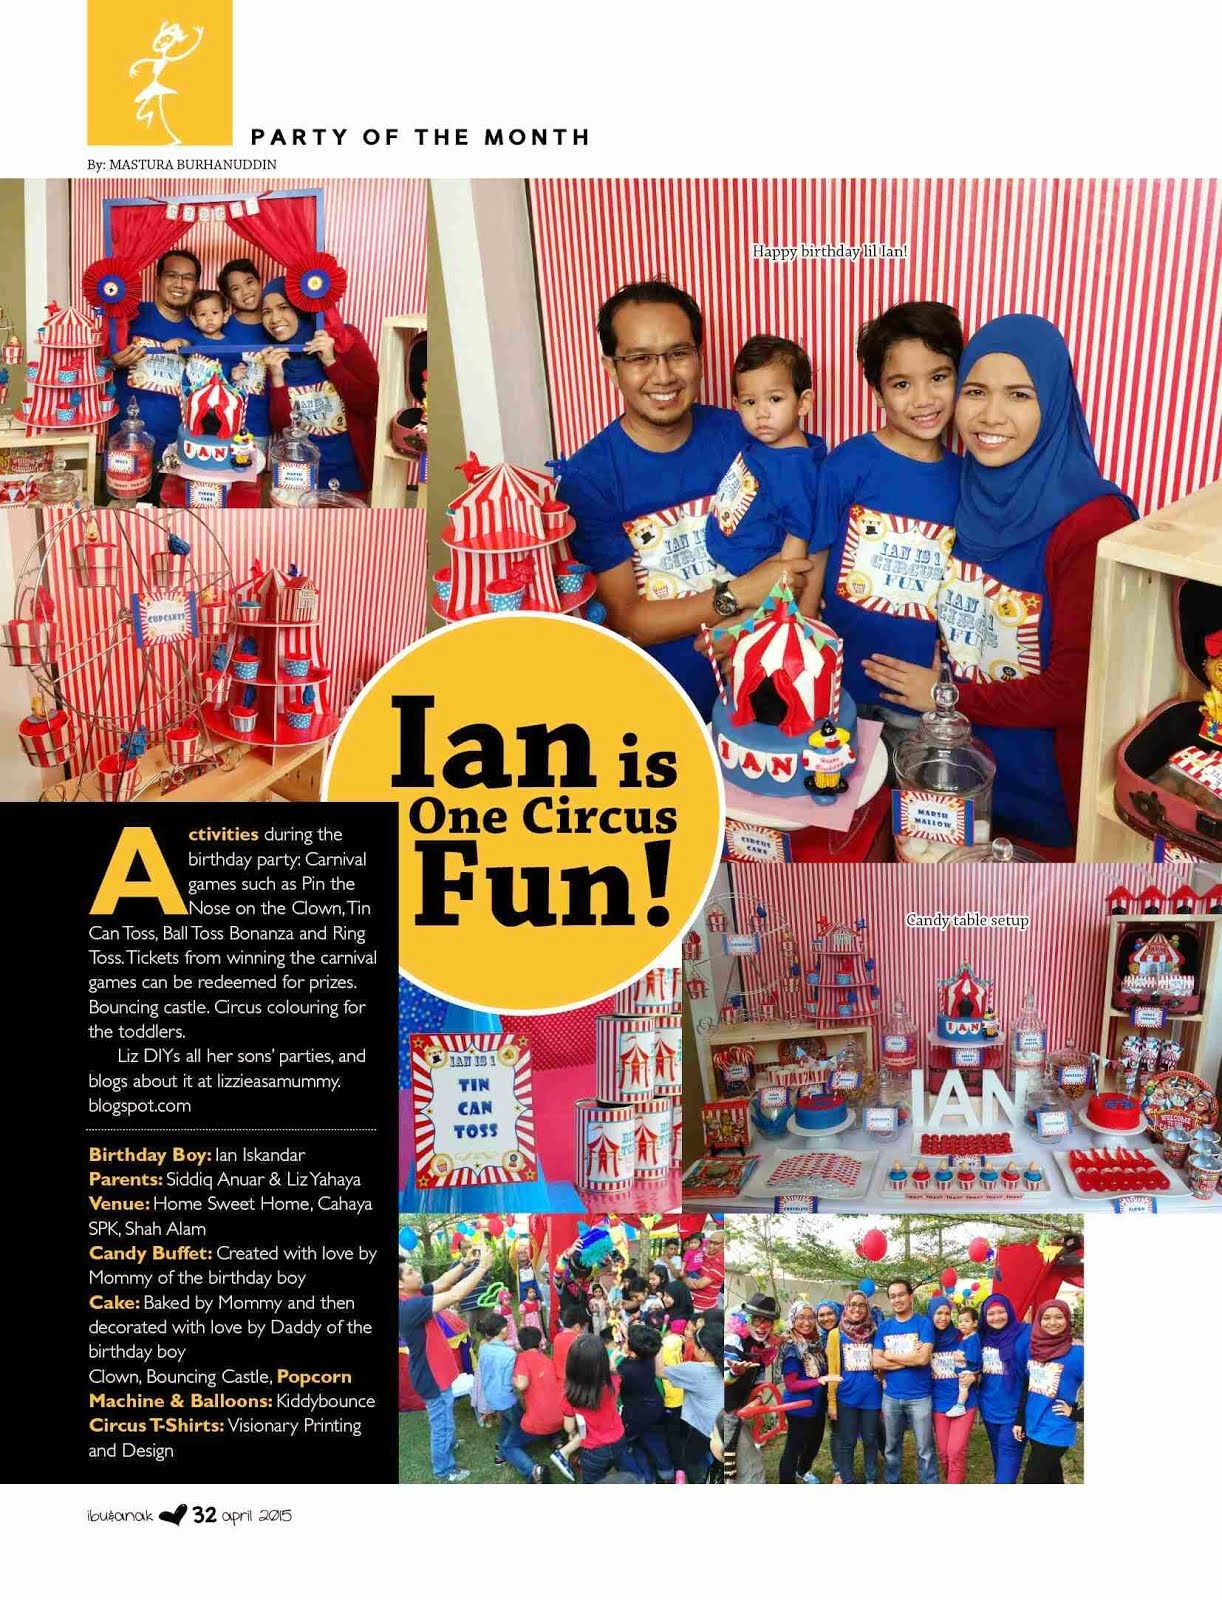 Featured in Majalah Ibu & Anak